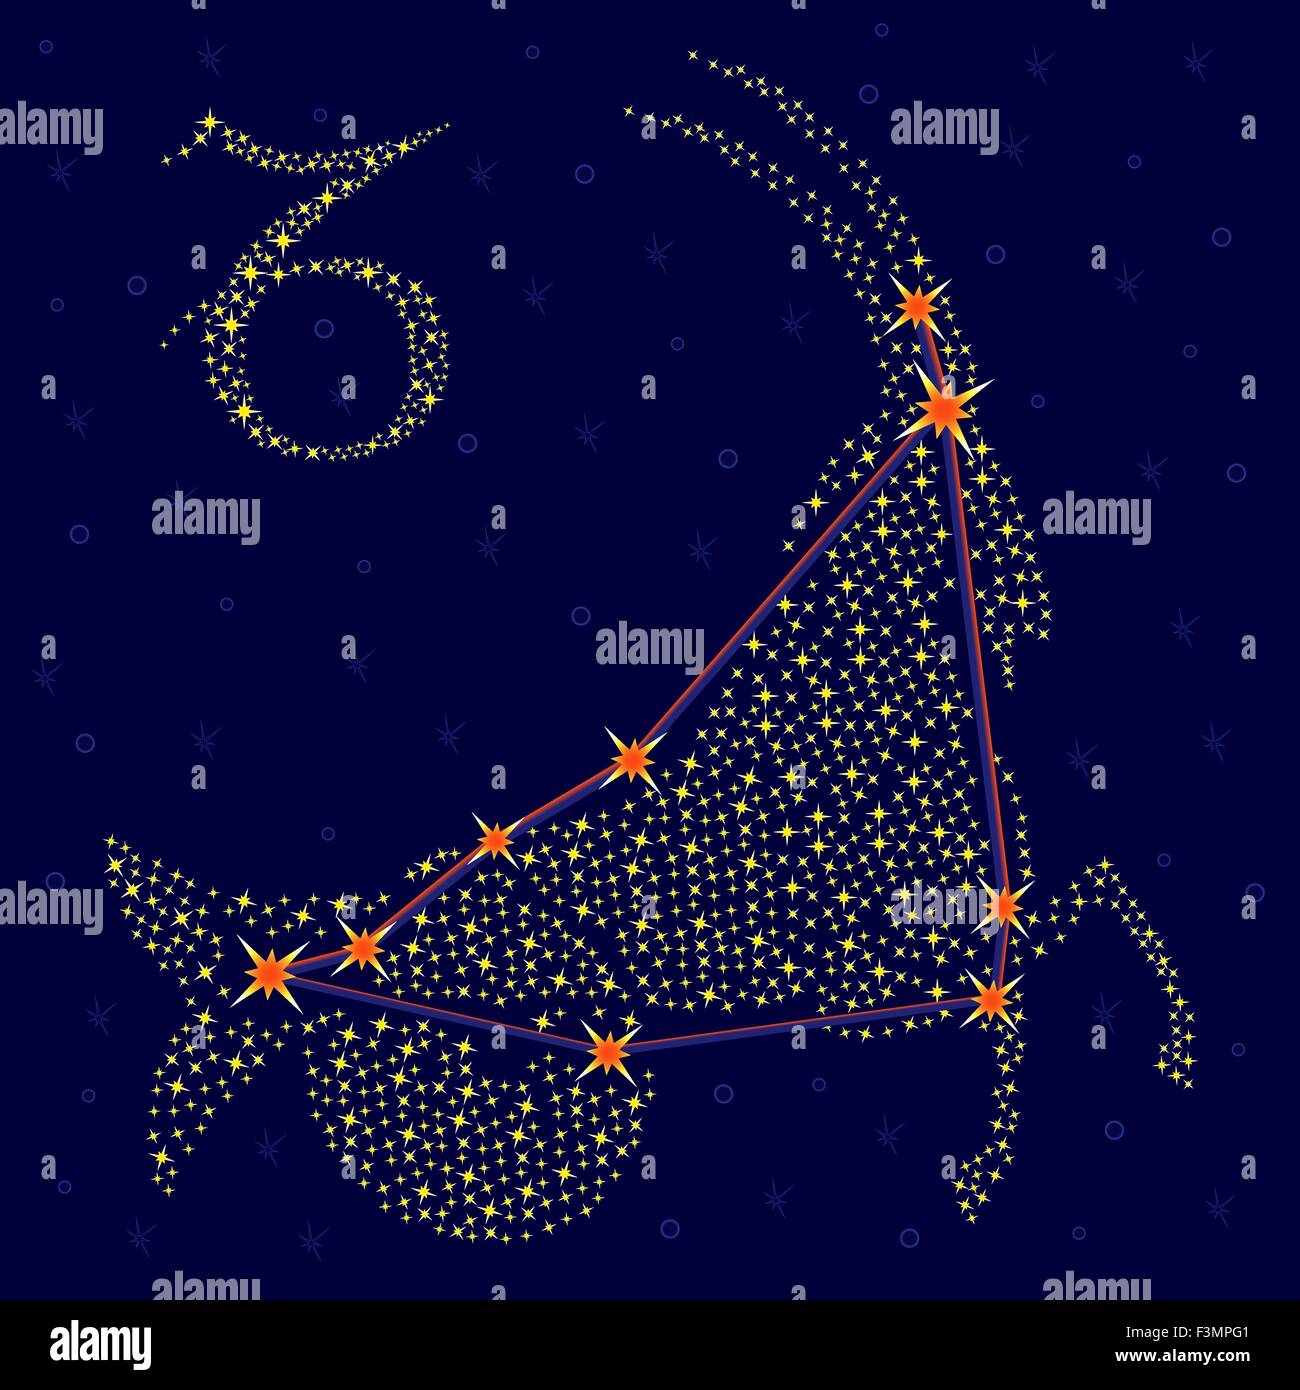 Sternzeichen Steinbock auf einem Hintergrund von den Sternenhimmel mit dem Schema von Sternen im Sternbild, Vektor-illustration Stock Vektor